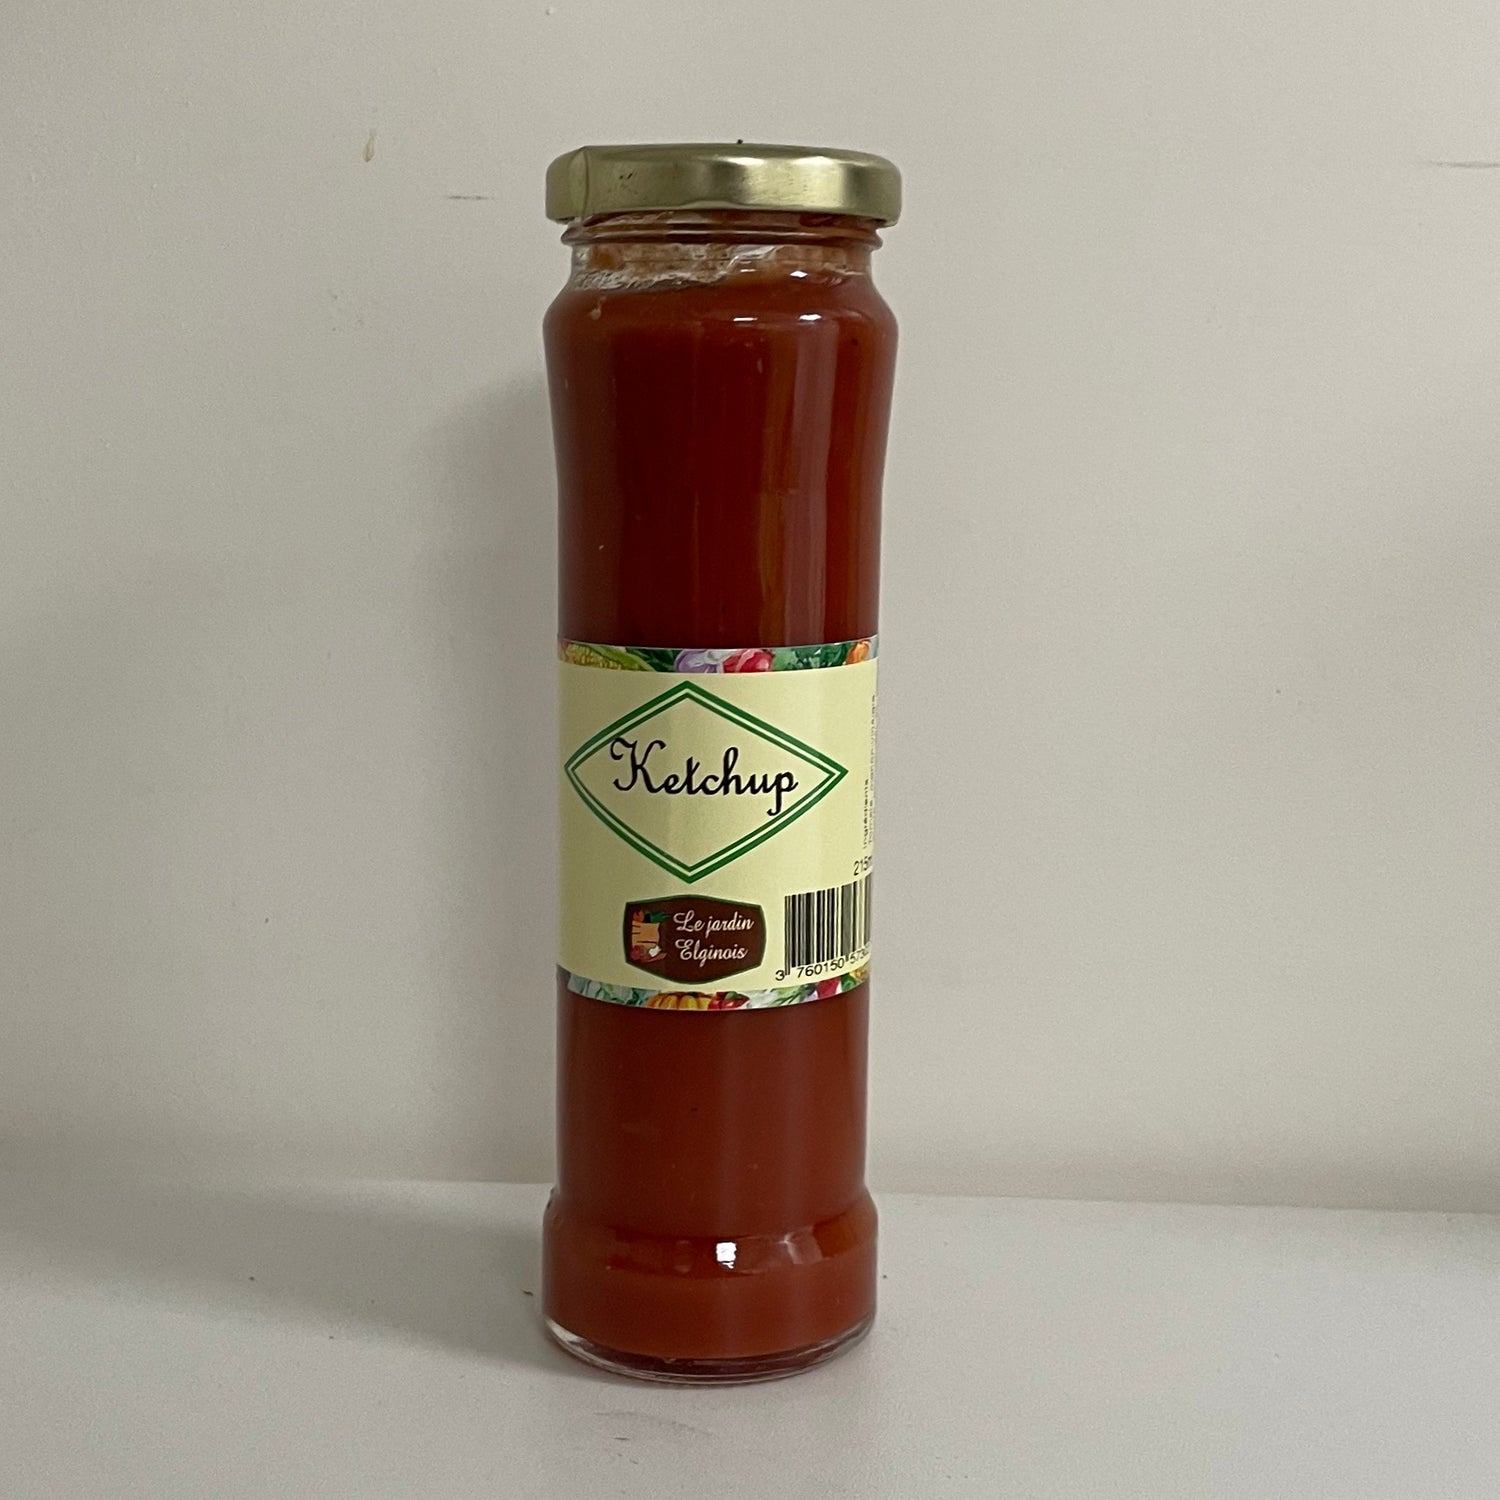 Le Jardin Elginois à Legny (69620) produit et transforme ses légumes. Le ketchup artisanal est proposé en bocal de 215mL. Ingrédients : tomate, oignon, vinaigre, sucre, poivron, sel, ail, poivre. À retrouver chez Click & POULETTE à 3,35 euros / bocal